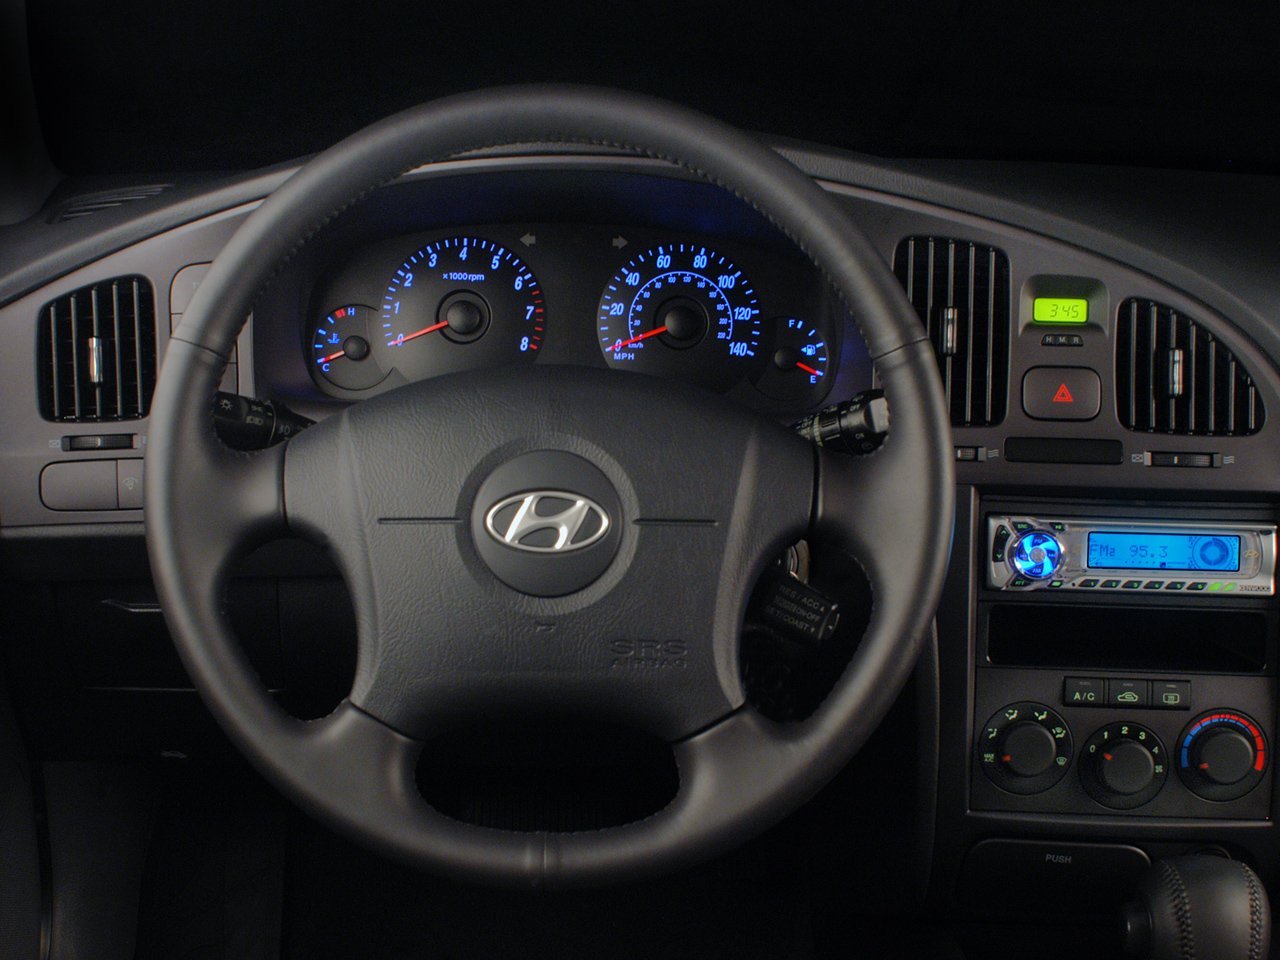 хэтчбек 5 дв. Hyundai Elantra 2003 - 2010г выпуска модификация 1.6 AT (105 л.с.)